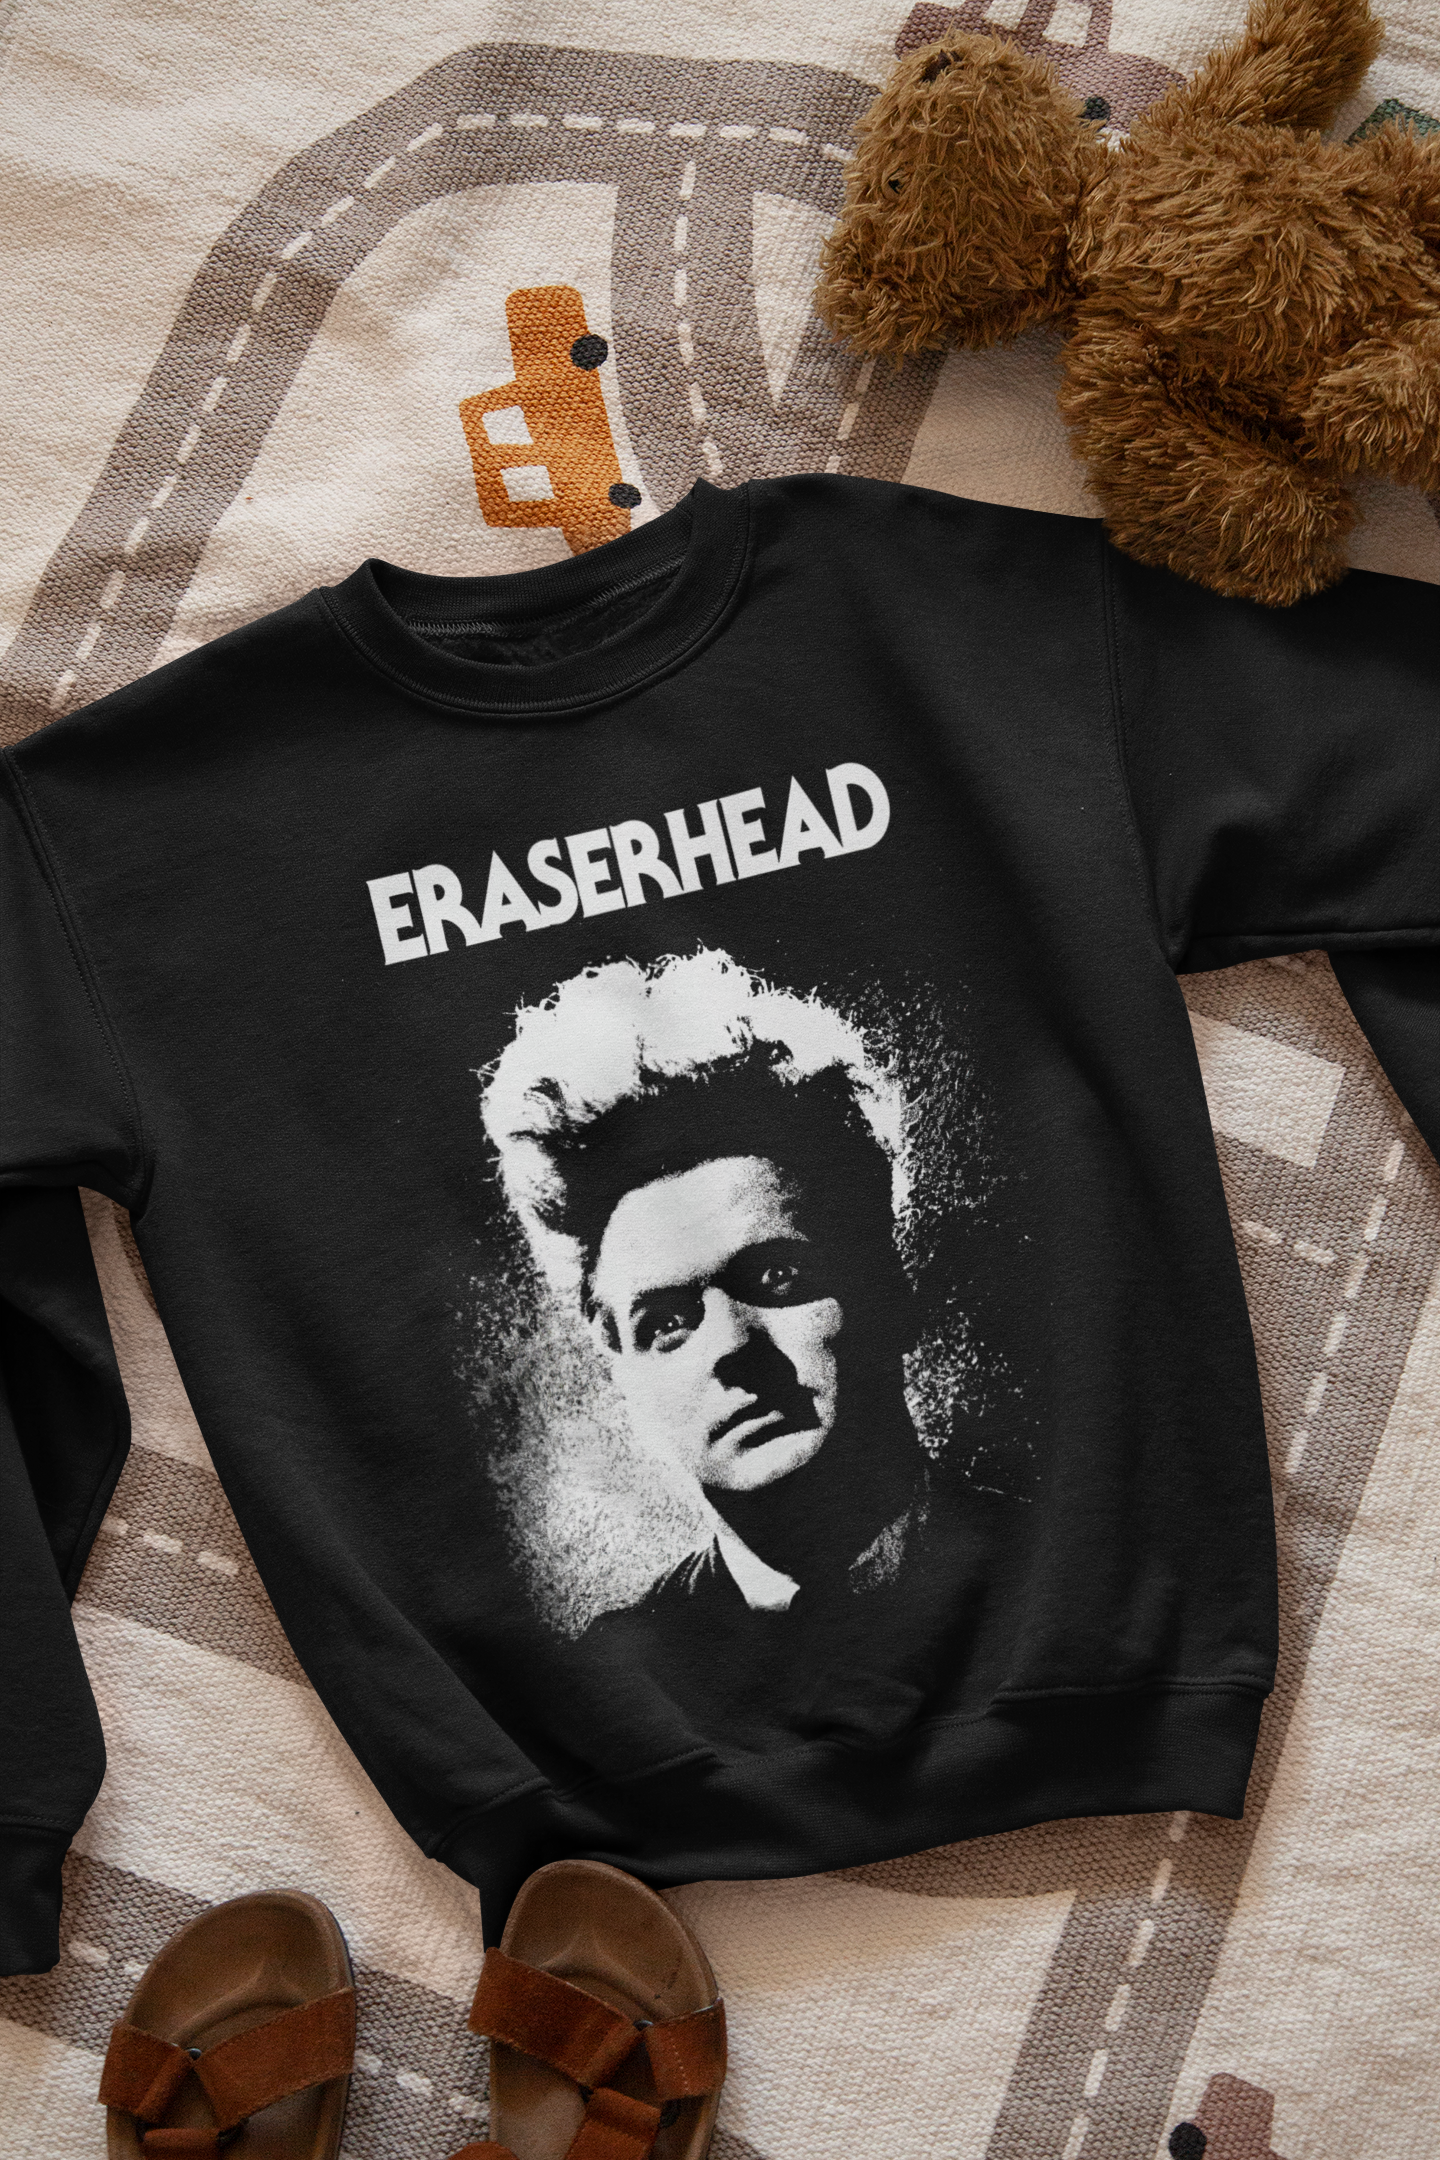 Eraserhead Sweatshirt